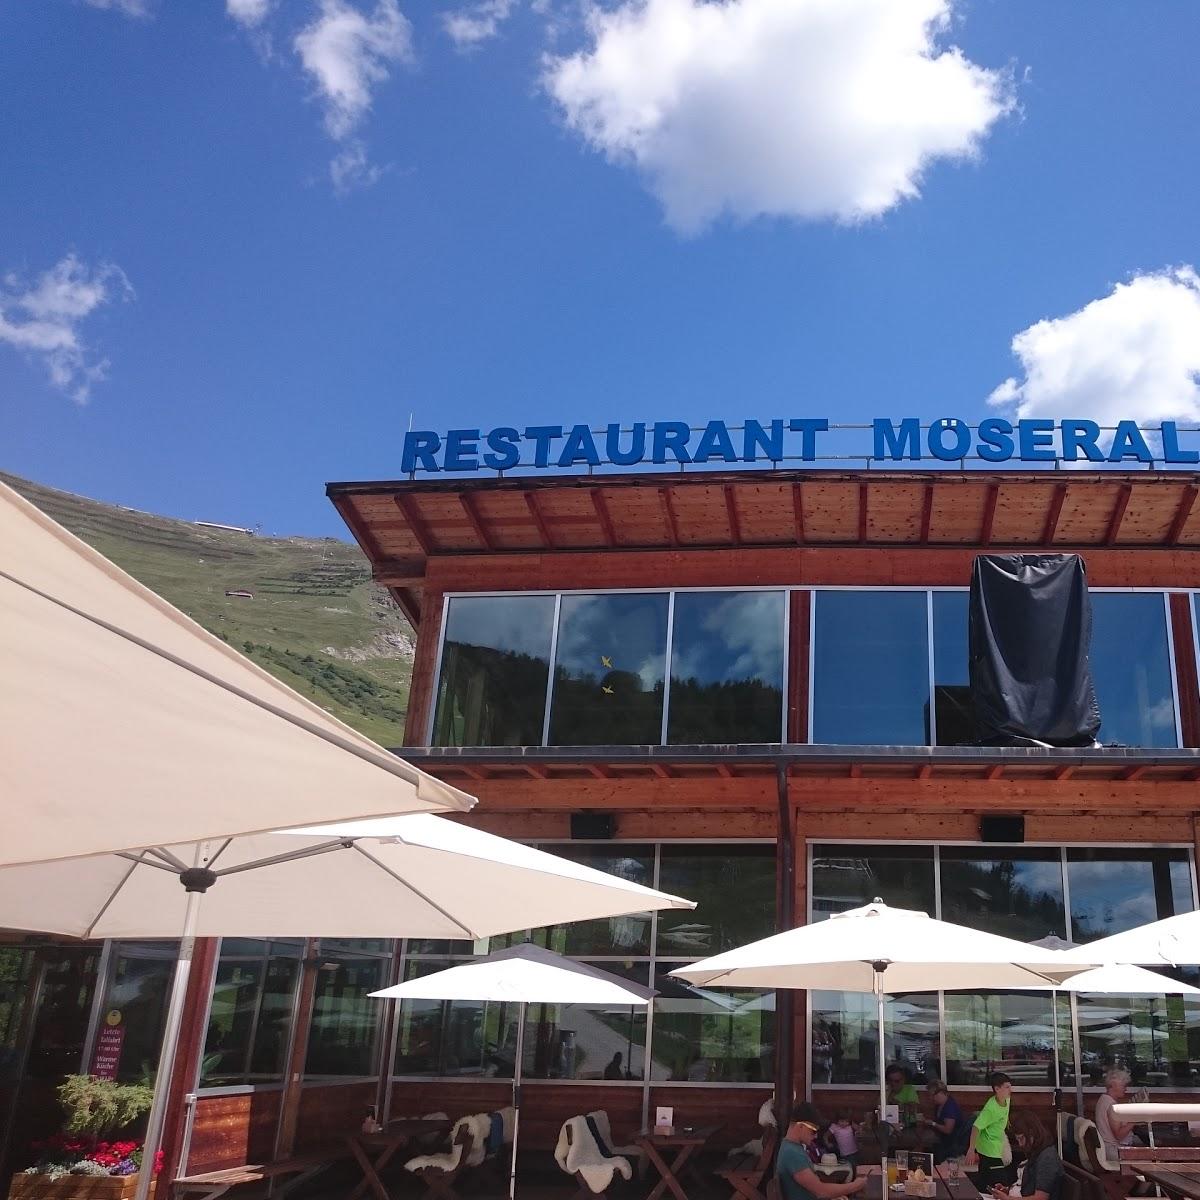 Restaurant "Bergrestaurant Möseralm" in Fiss